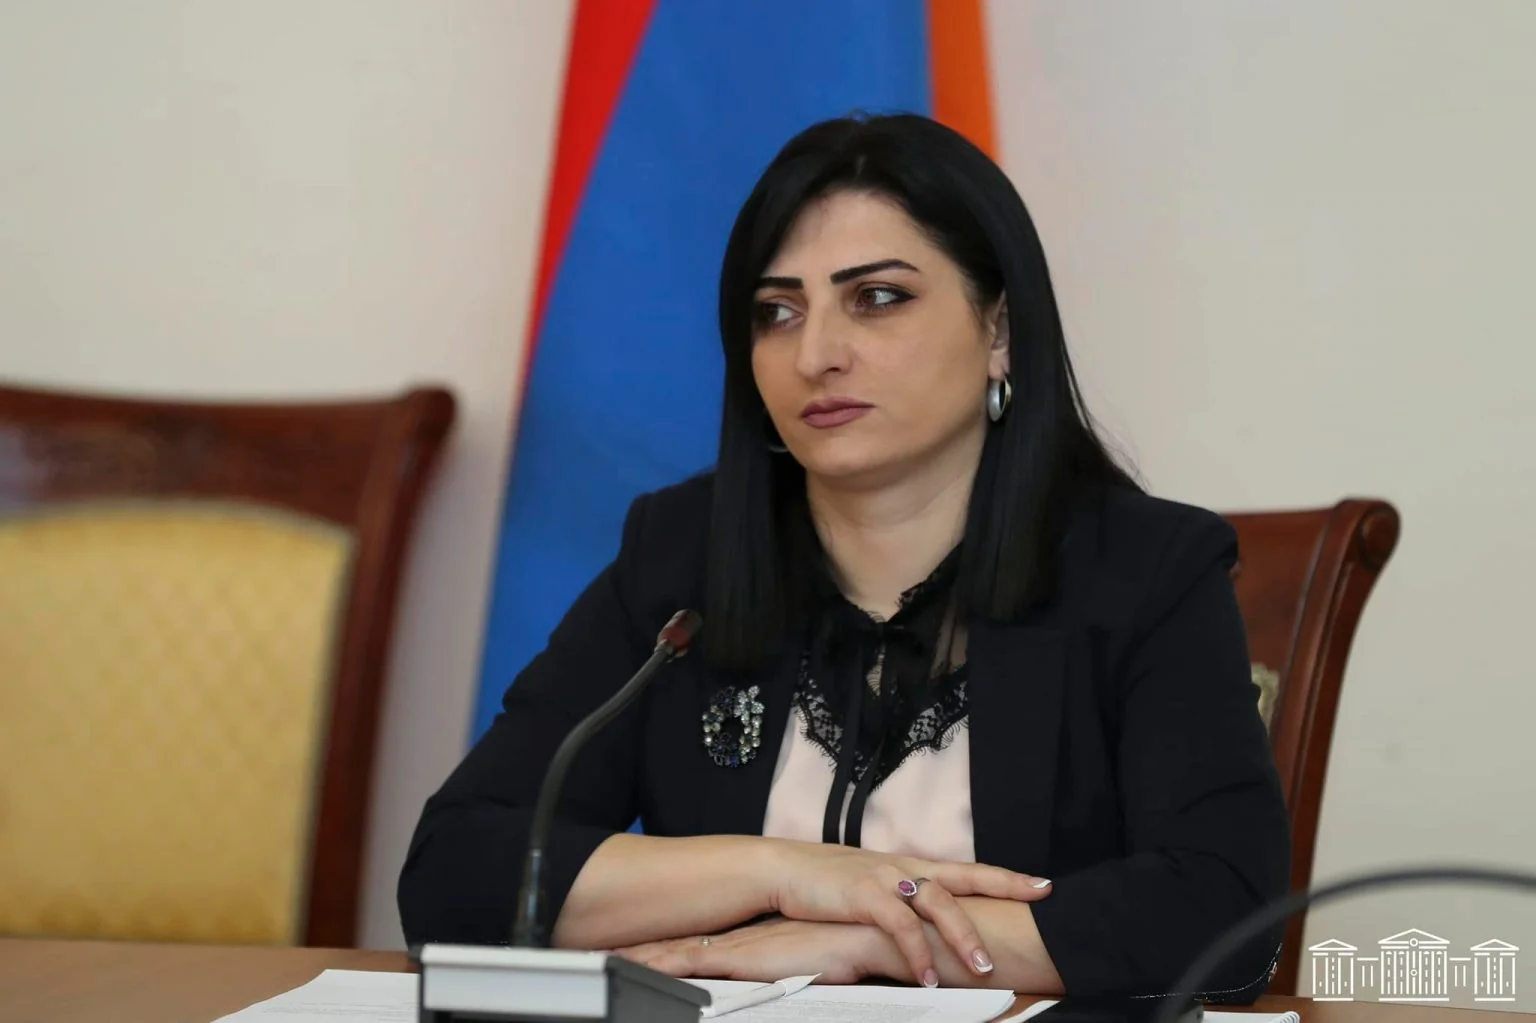 Ադրբեջանը մտադիր է նոր ագրեսիա անել. Թովմասյանը դիմել է միջազգային գործընկերներին՝ կանխարգելելու այն